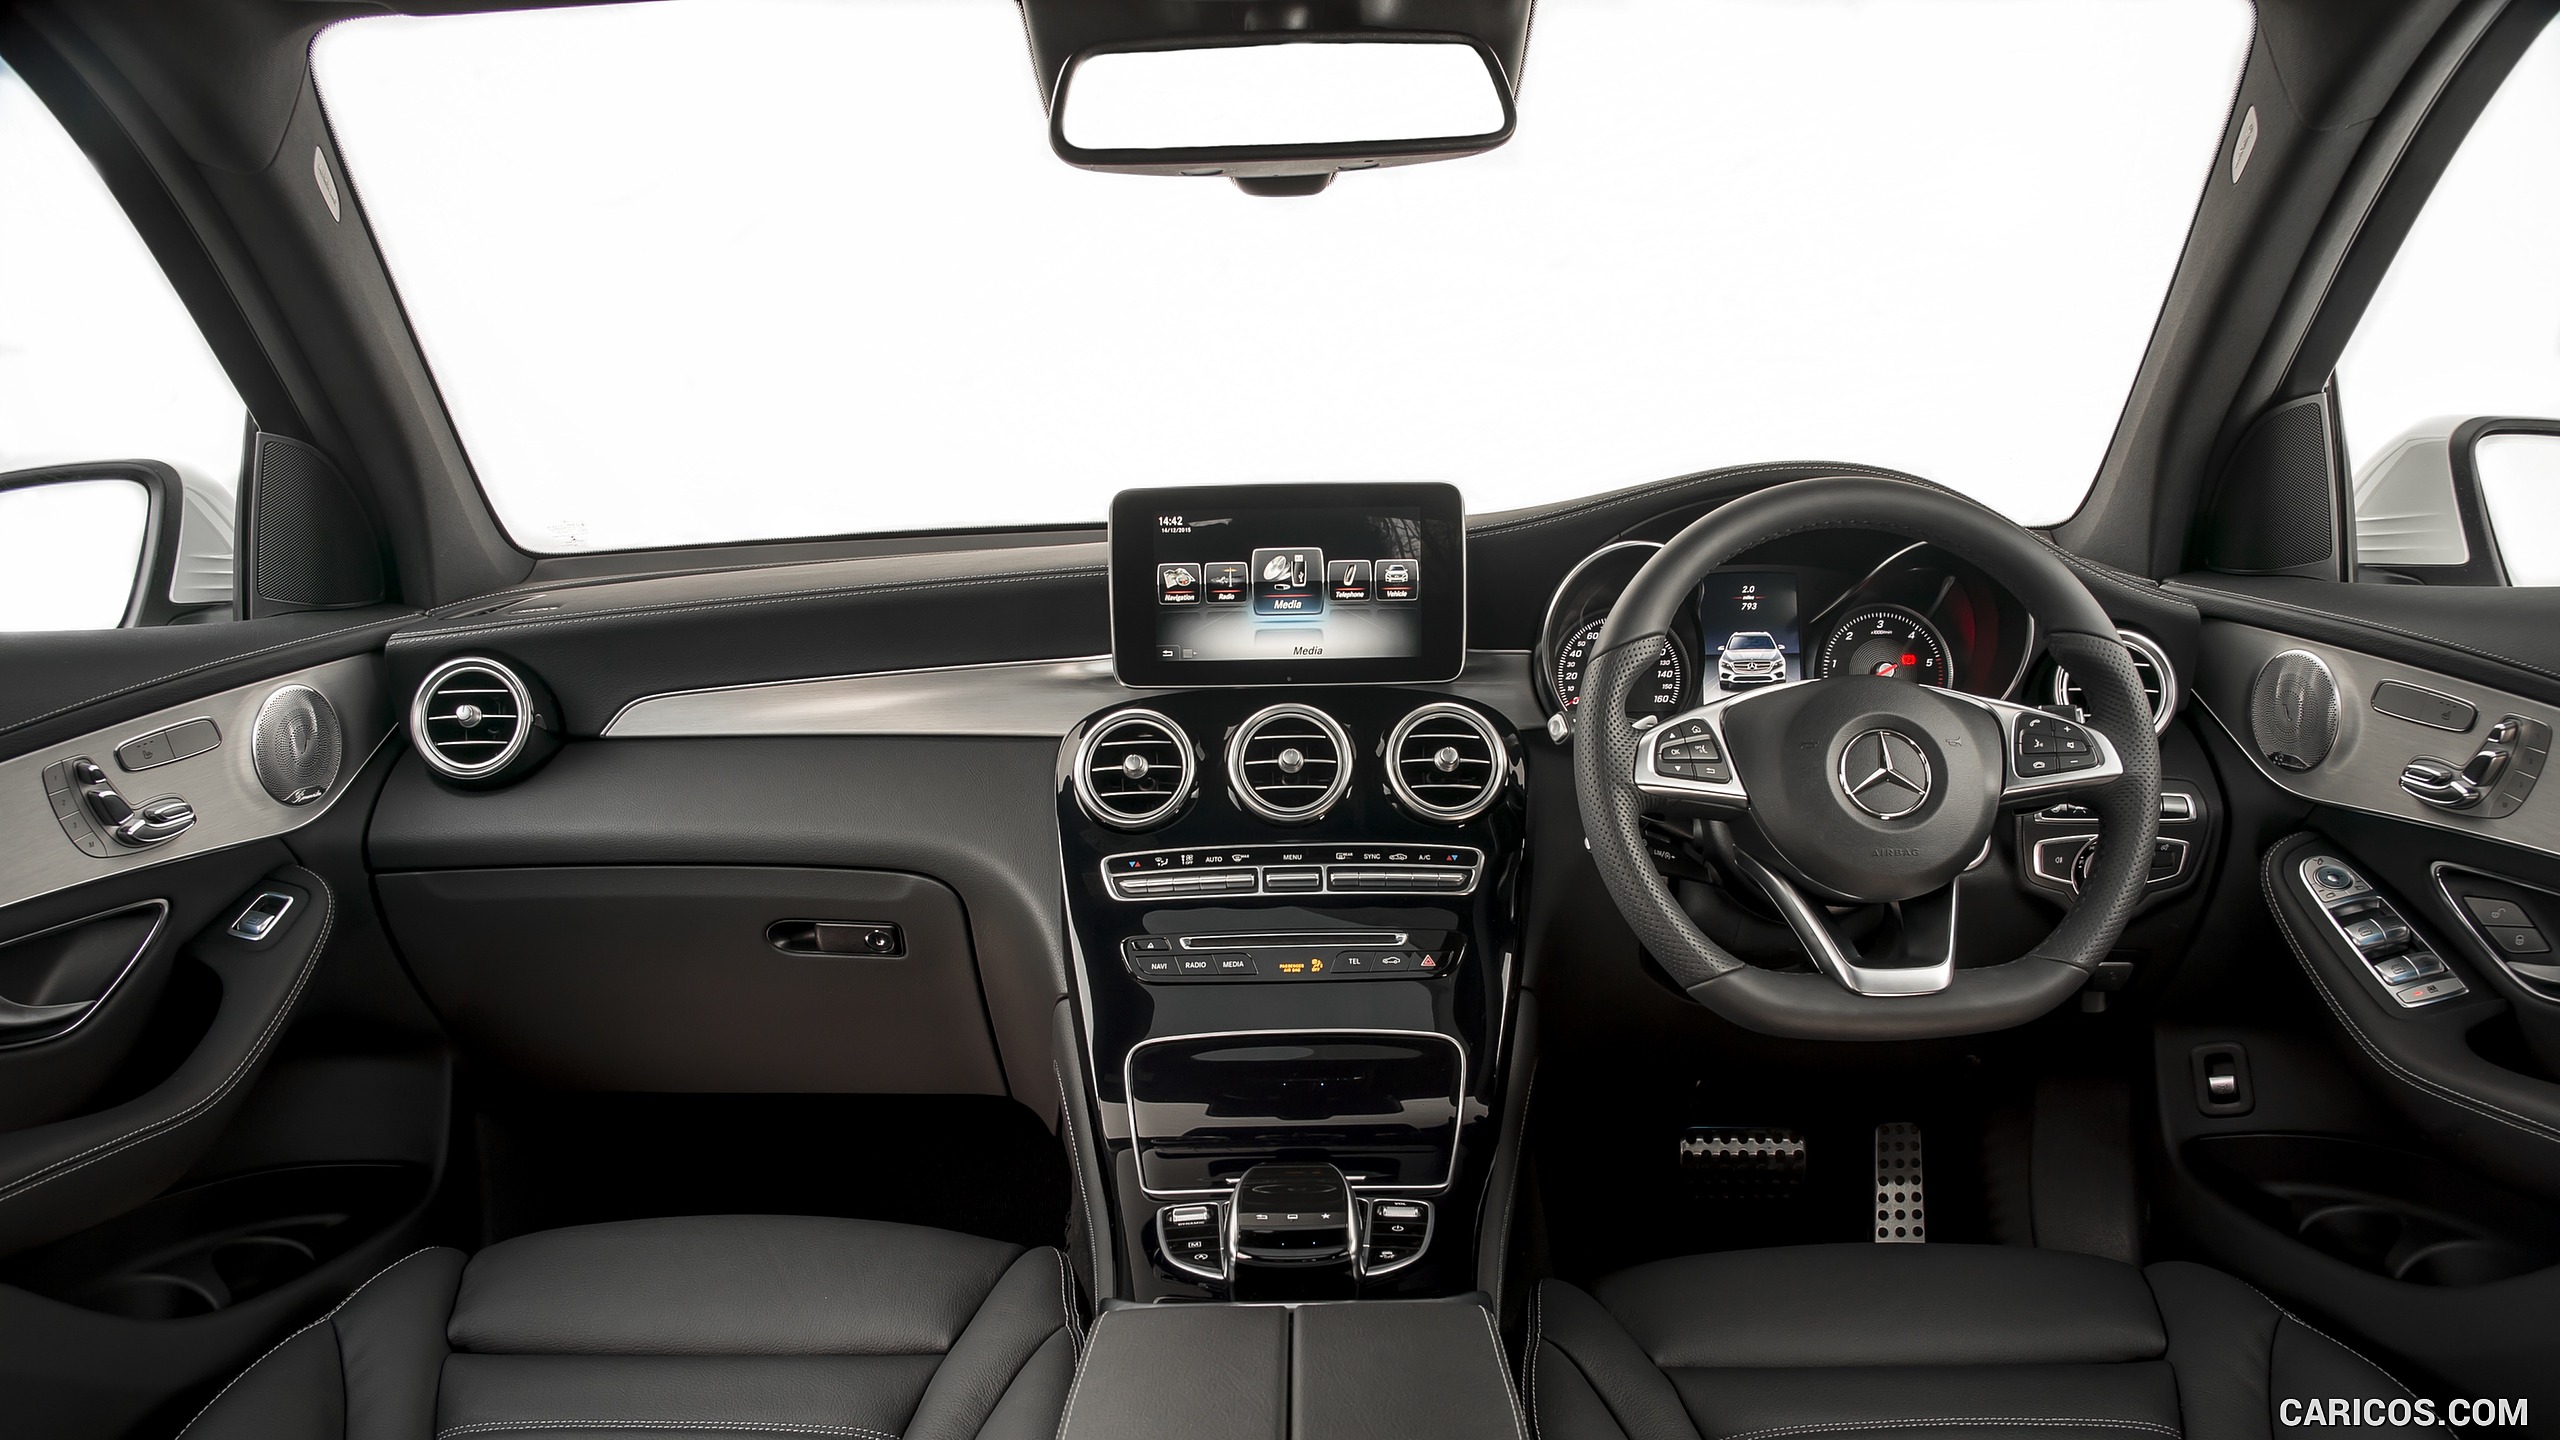 2016 Mercedes-Benz GLC 250d 4MATIC AMG Line (UK-Spec) - Interior, Cockpit, #97 of 130